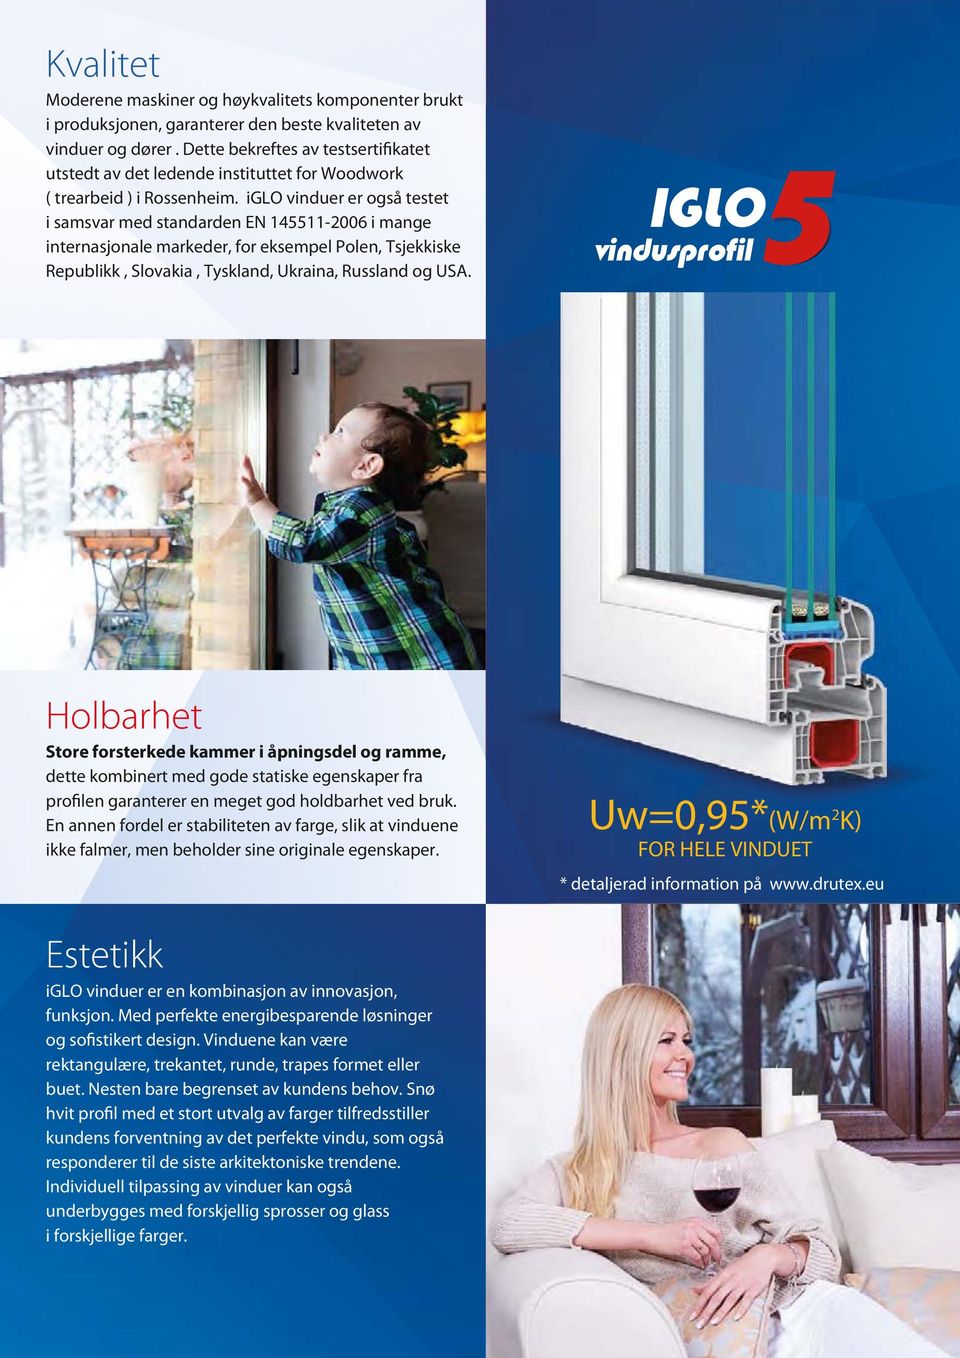 iglo vinduer er også testet i samsvar med standarden EN 145511-26 i mange internasjonale markeder, for eksempel Polen, Tsjekkiske Republikk, Slovakia, Tyskland, Ukraina, Russland og USA.